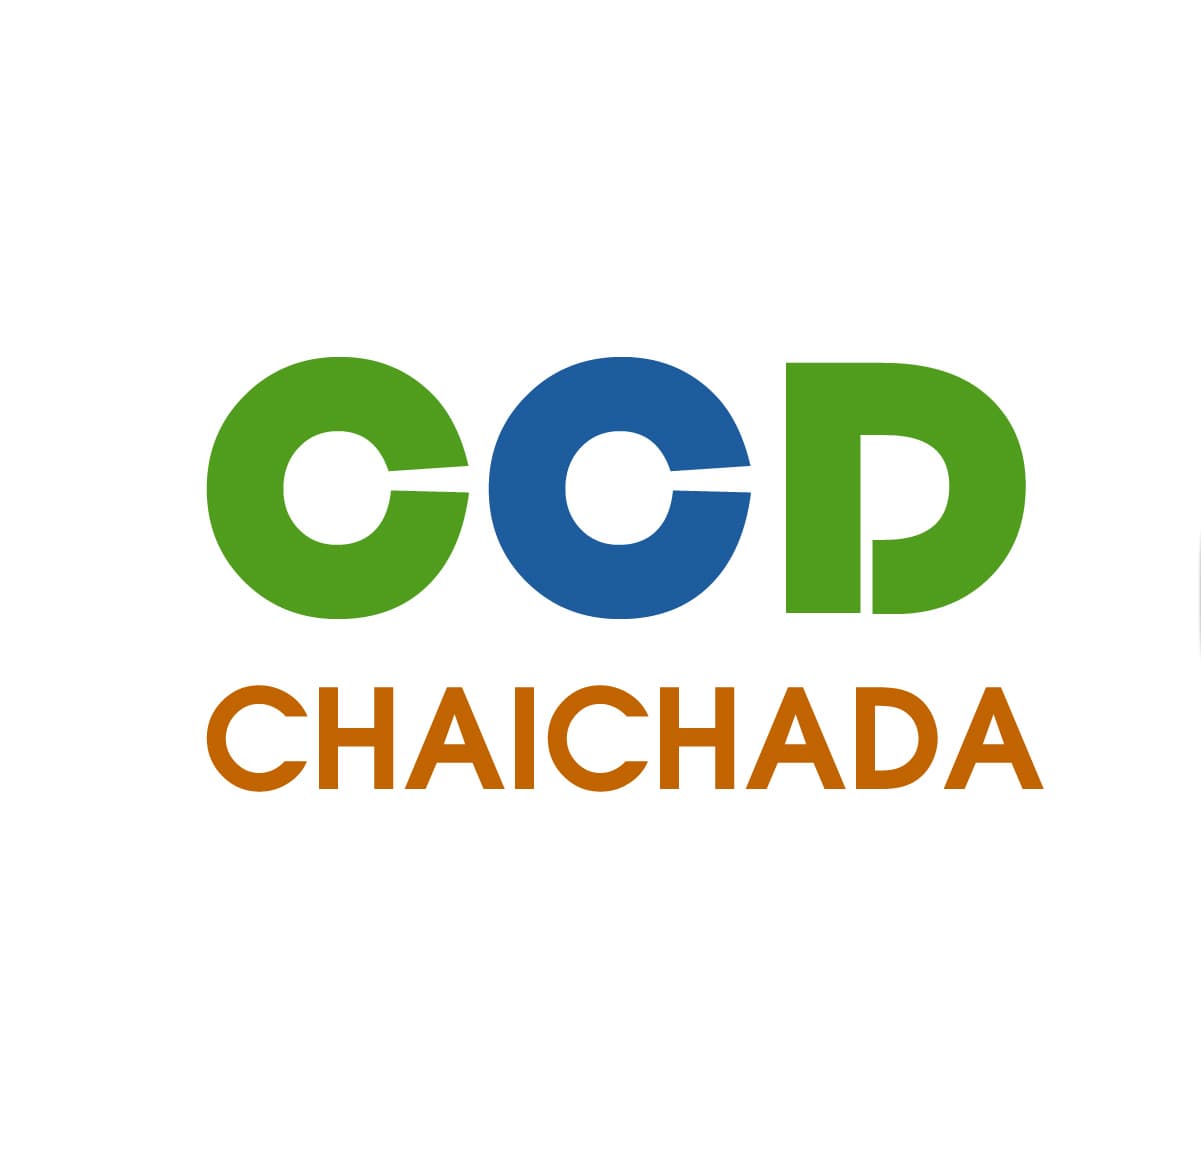 Chaichada Company